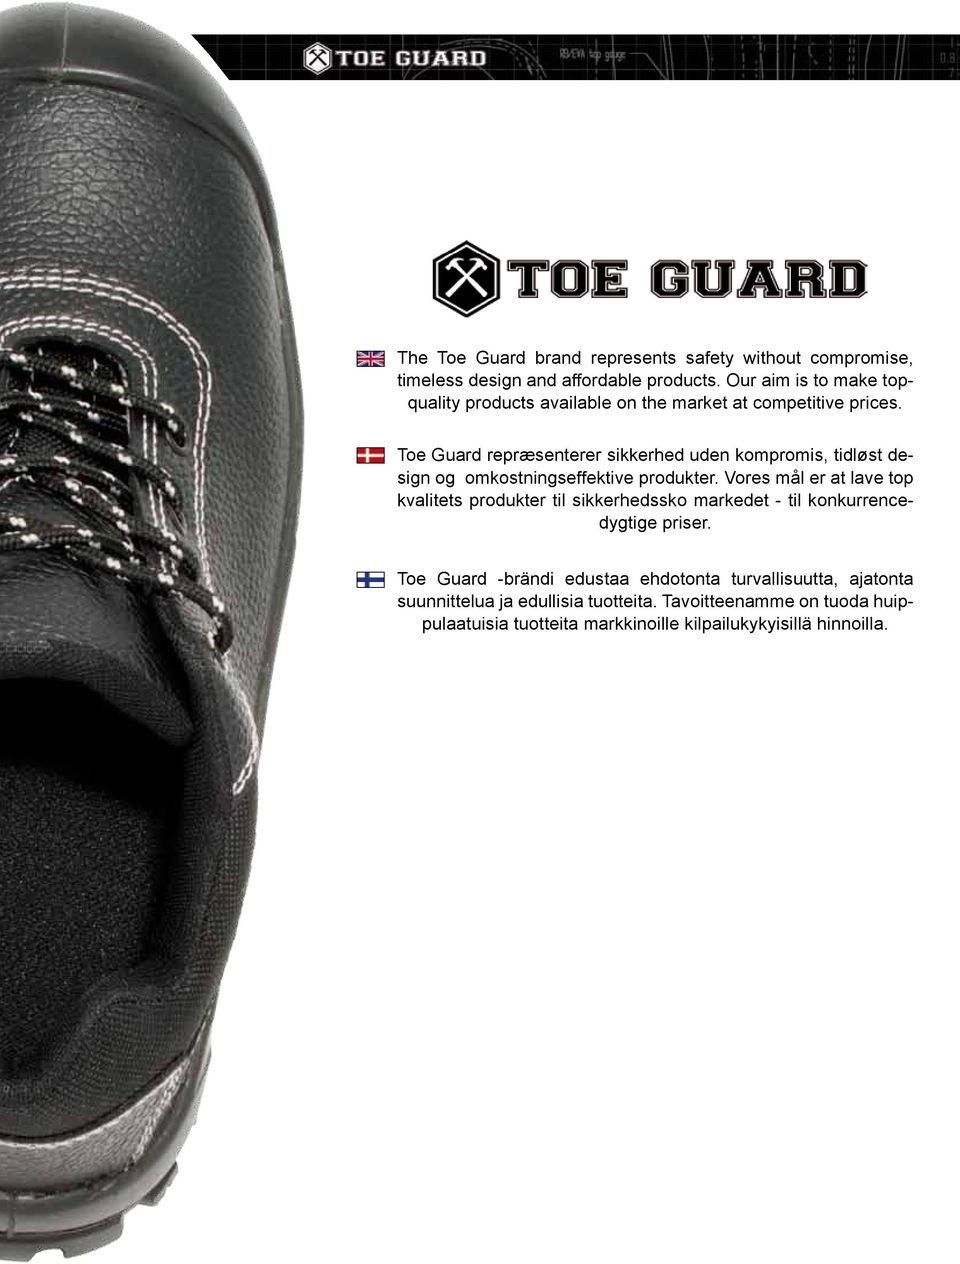 Toe Guard repræsenterer sikkerhed uden kompromis, tidløst design og omkostningseffektive produkter.